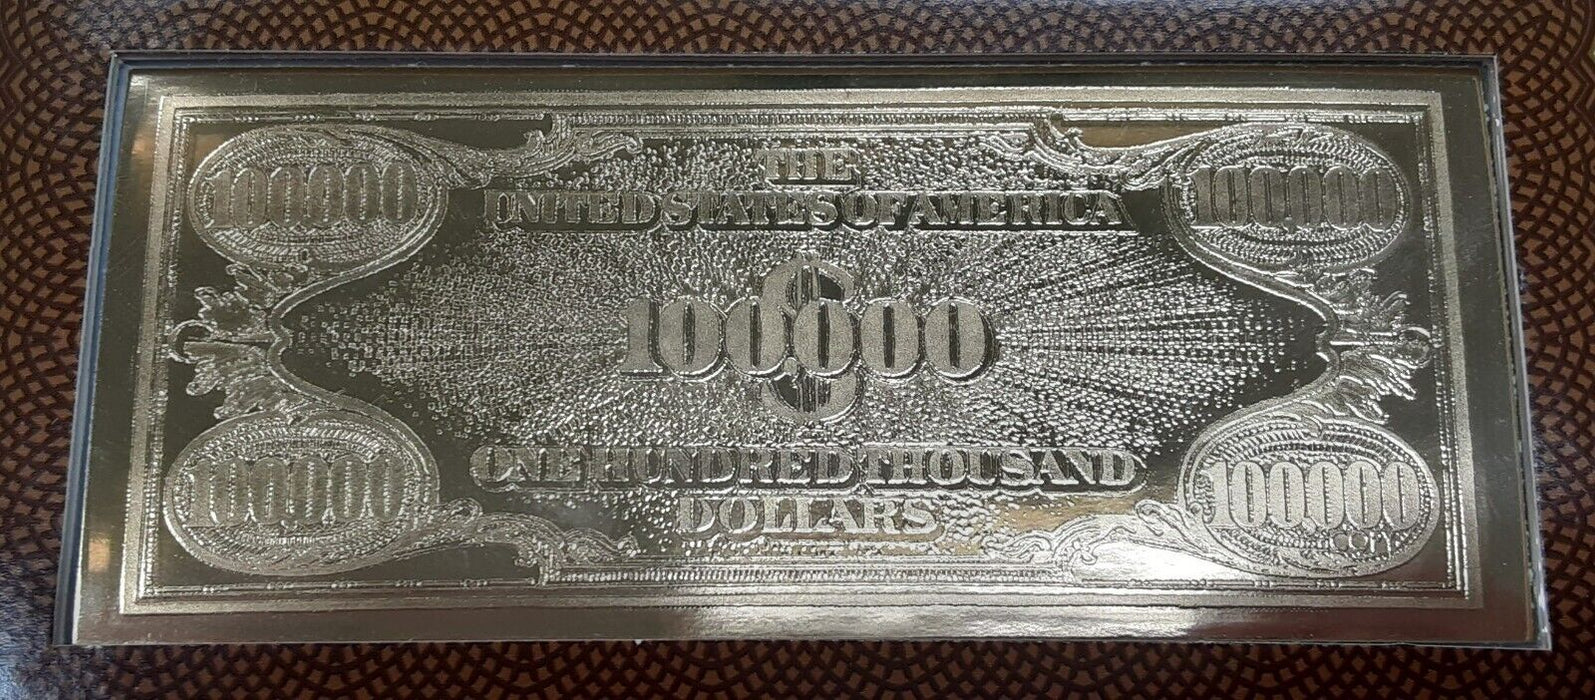 Danbury Mint 1934 $100000 Gold Certificate Note in Info Card